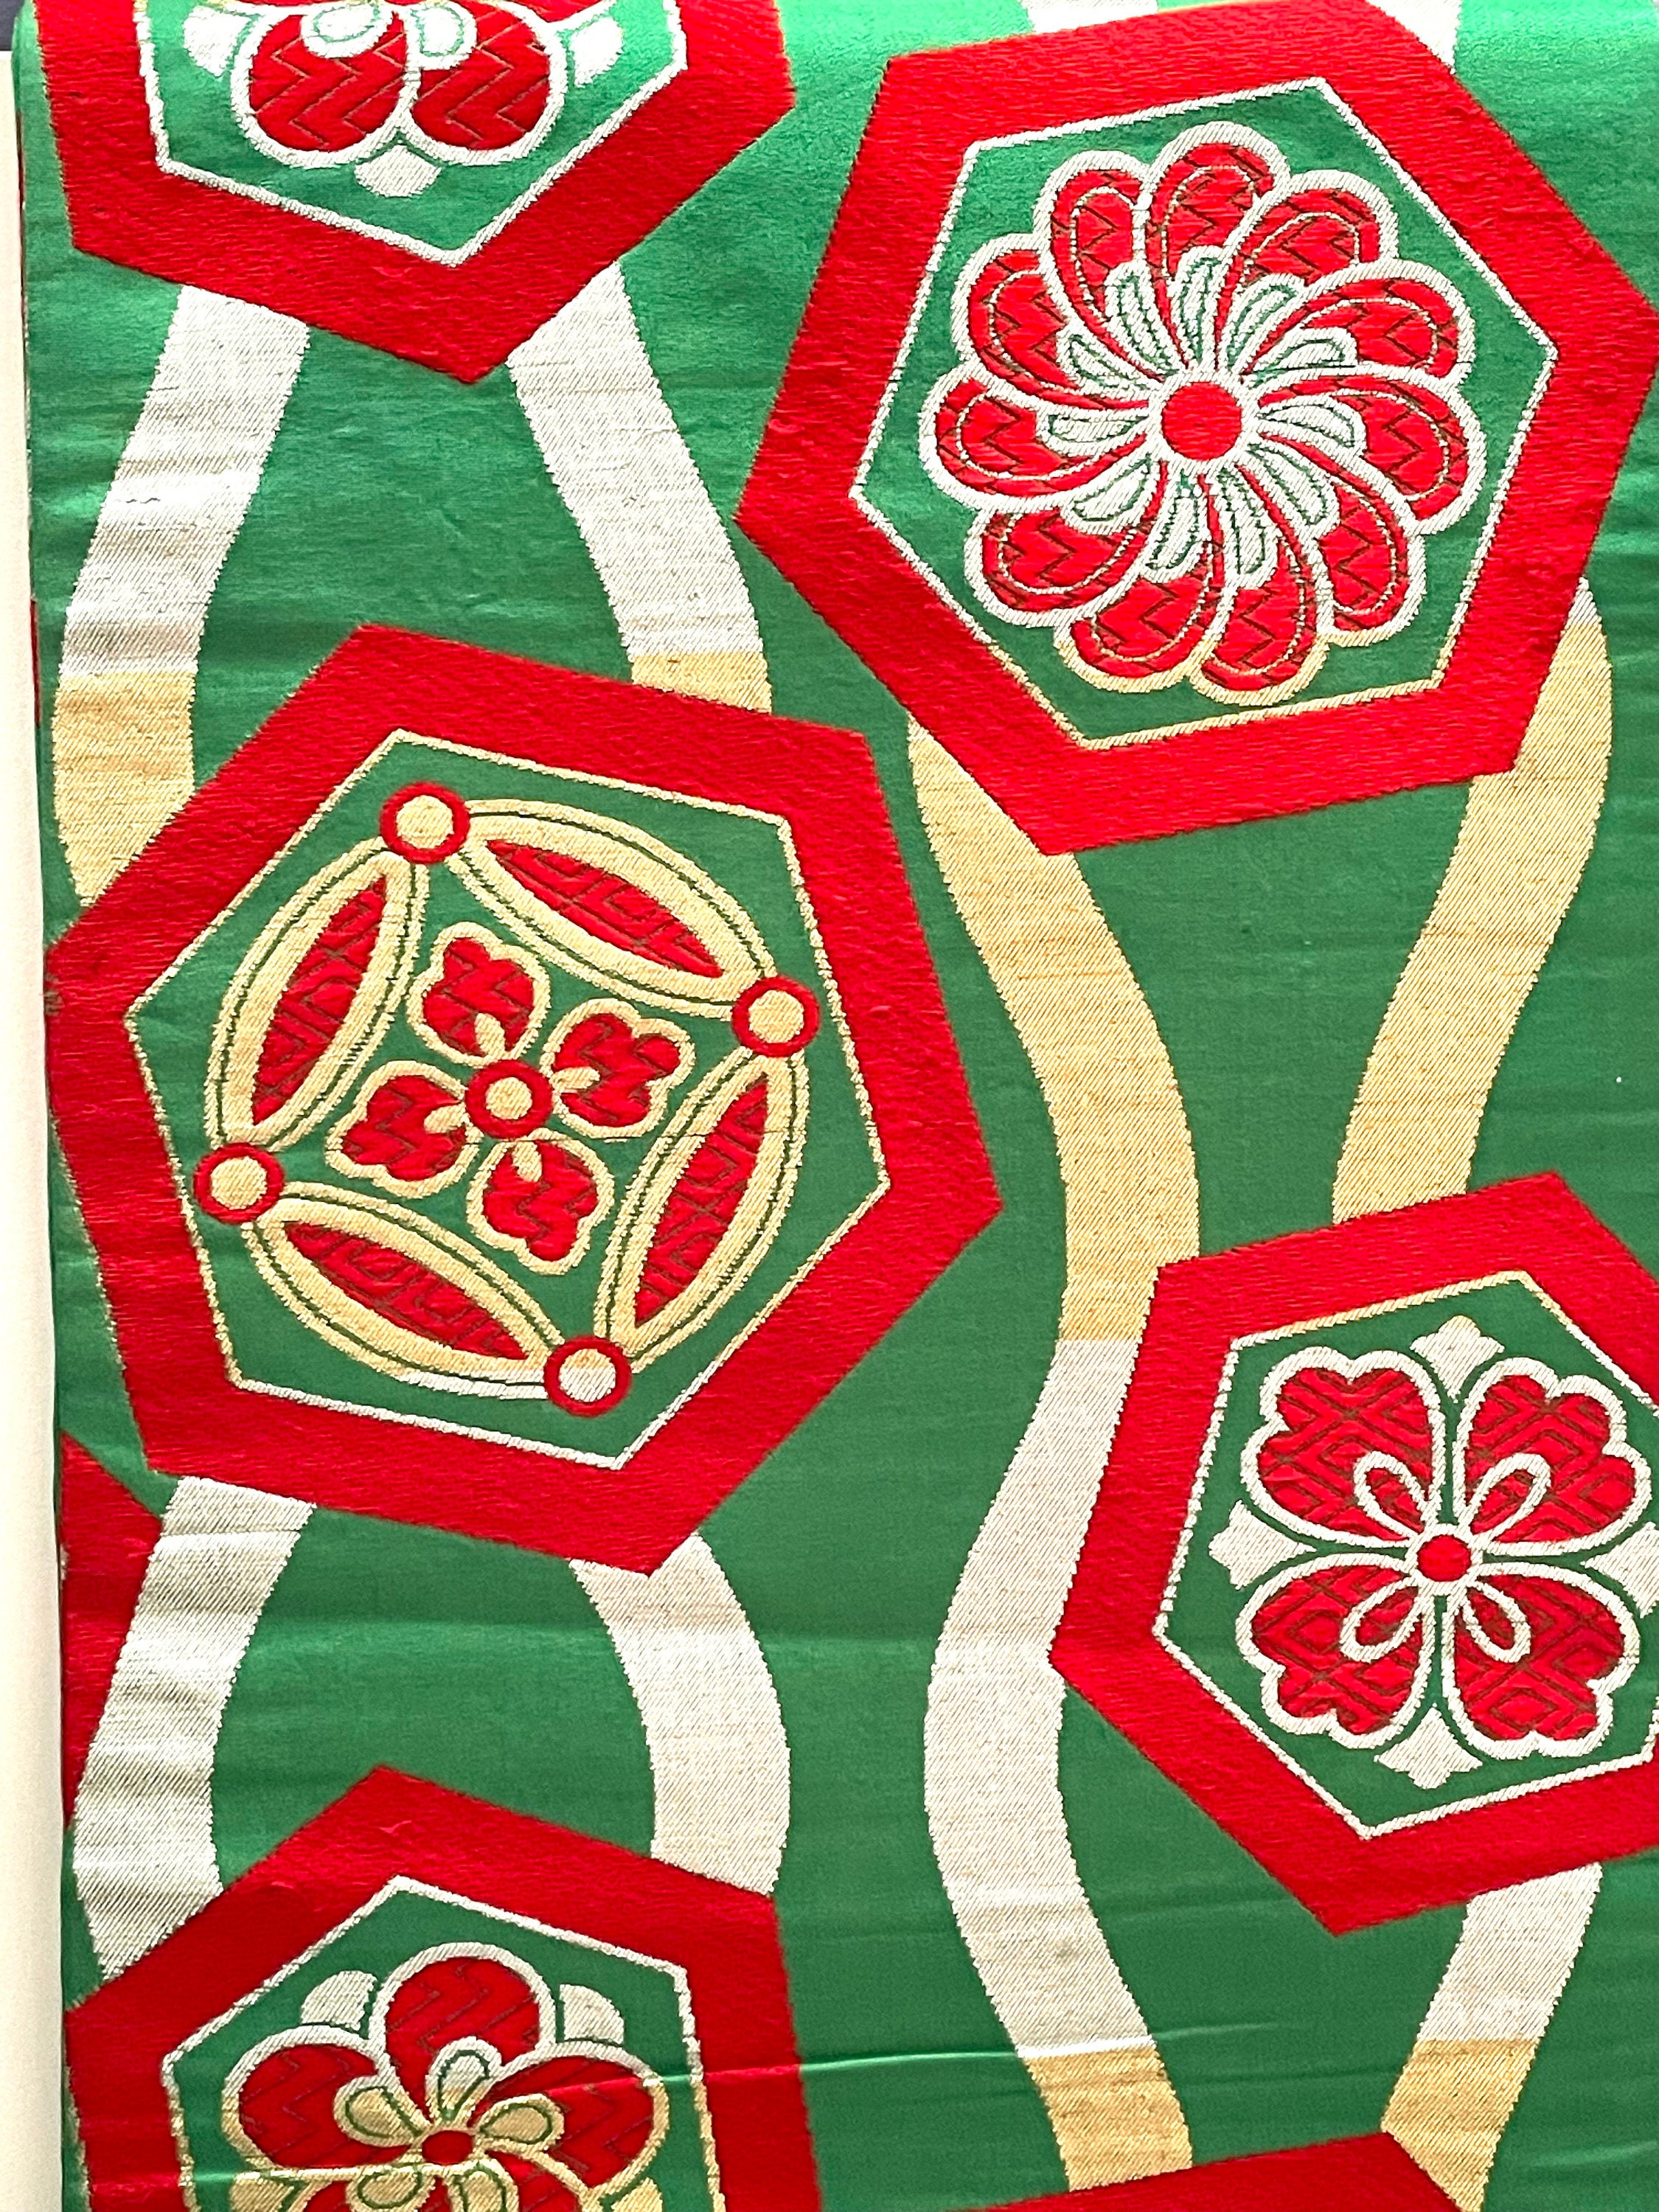 atelier NORIKO Japanese kimono fablic chrysanthemum pattern red bag